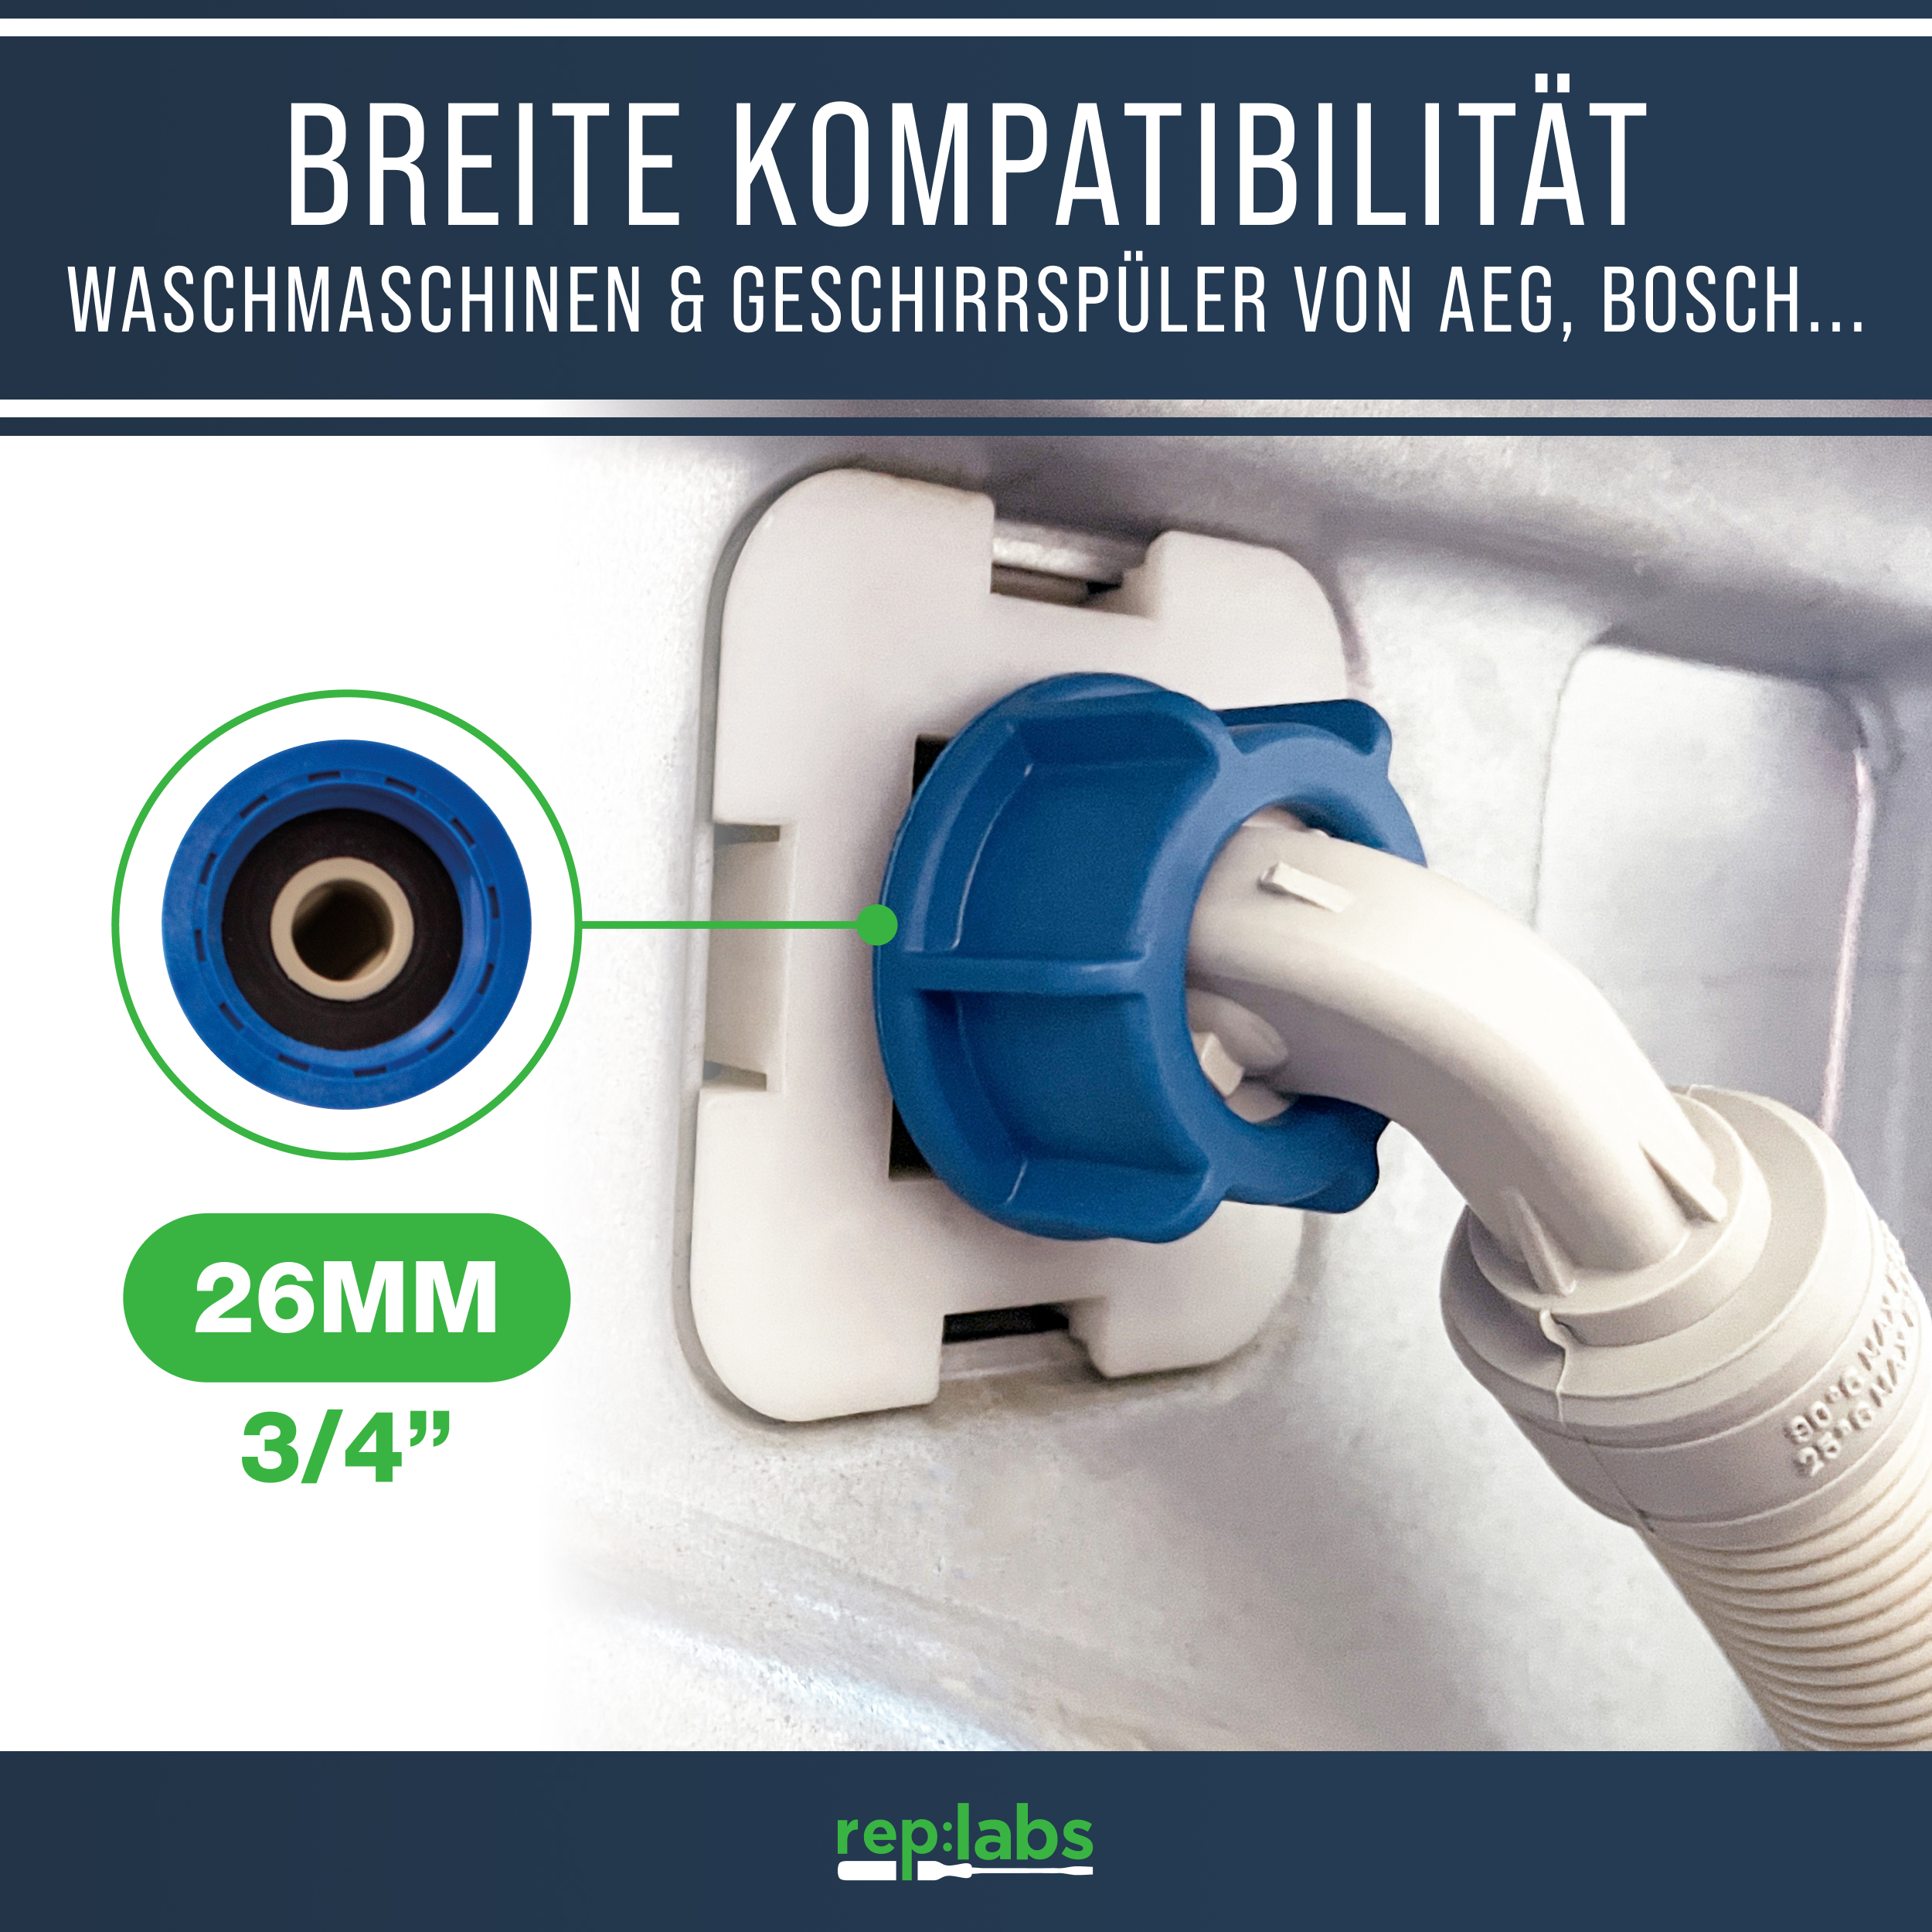 Zulaufschlauch Aquastopschlauch 4,0m - Universaler Sicherheitsschlauch für Waschmaschine und Geschirrspüler bis 90°C 